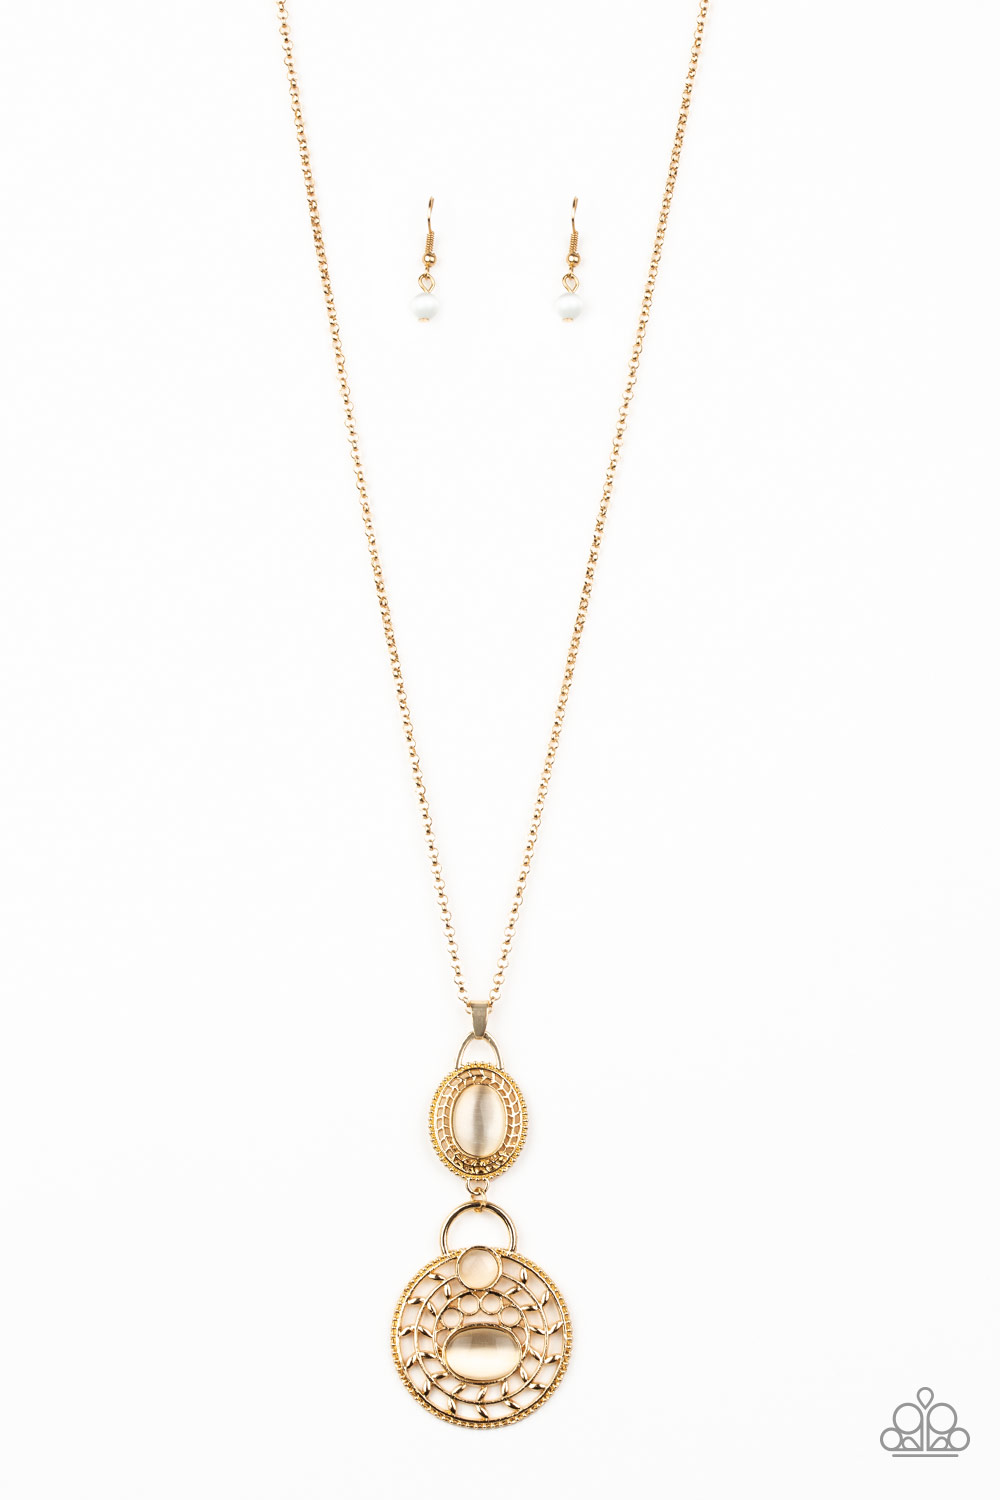 Necklace - Hook, VINE, and Sinker - Gold